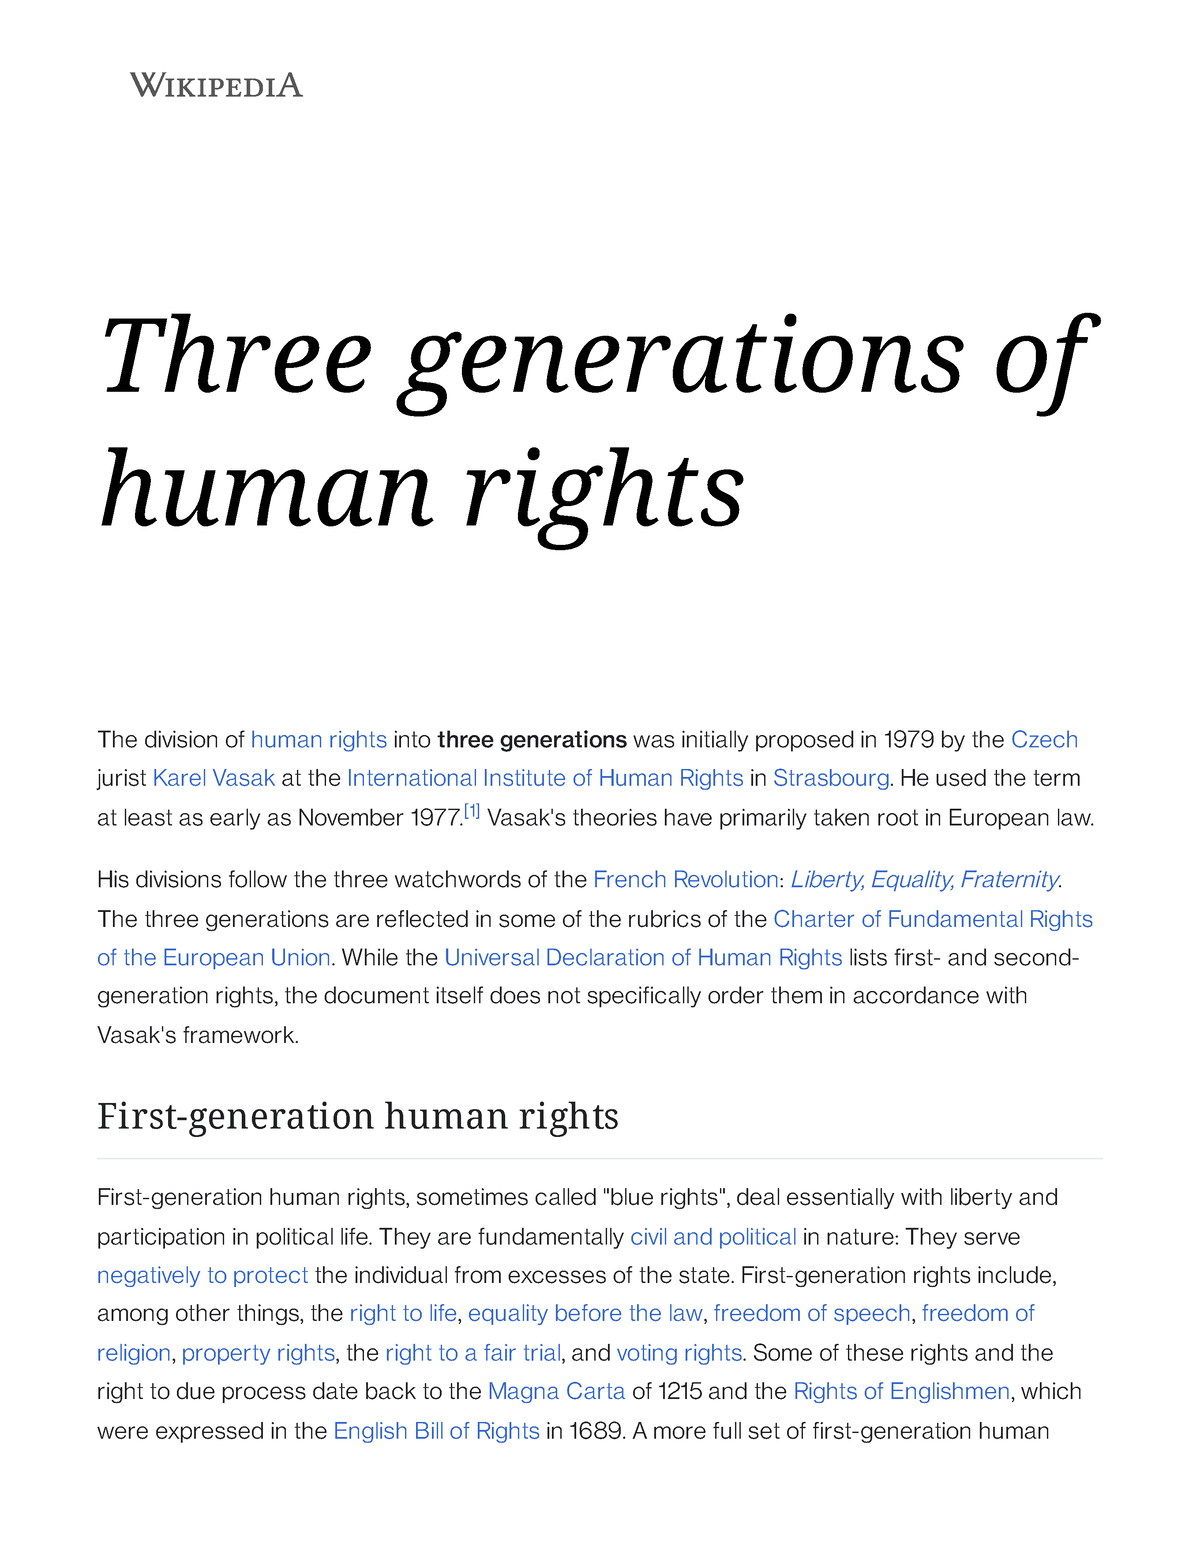 Three generations of human rights - Wikipedia - Three of human rights - Studocu